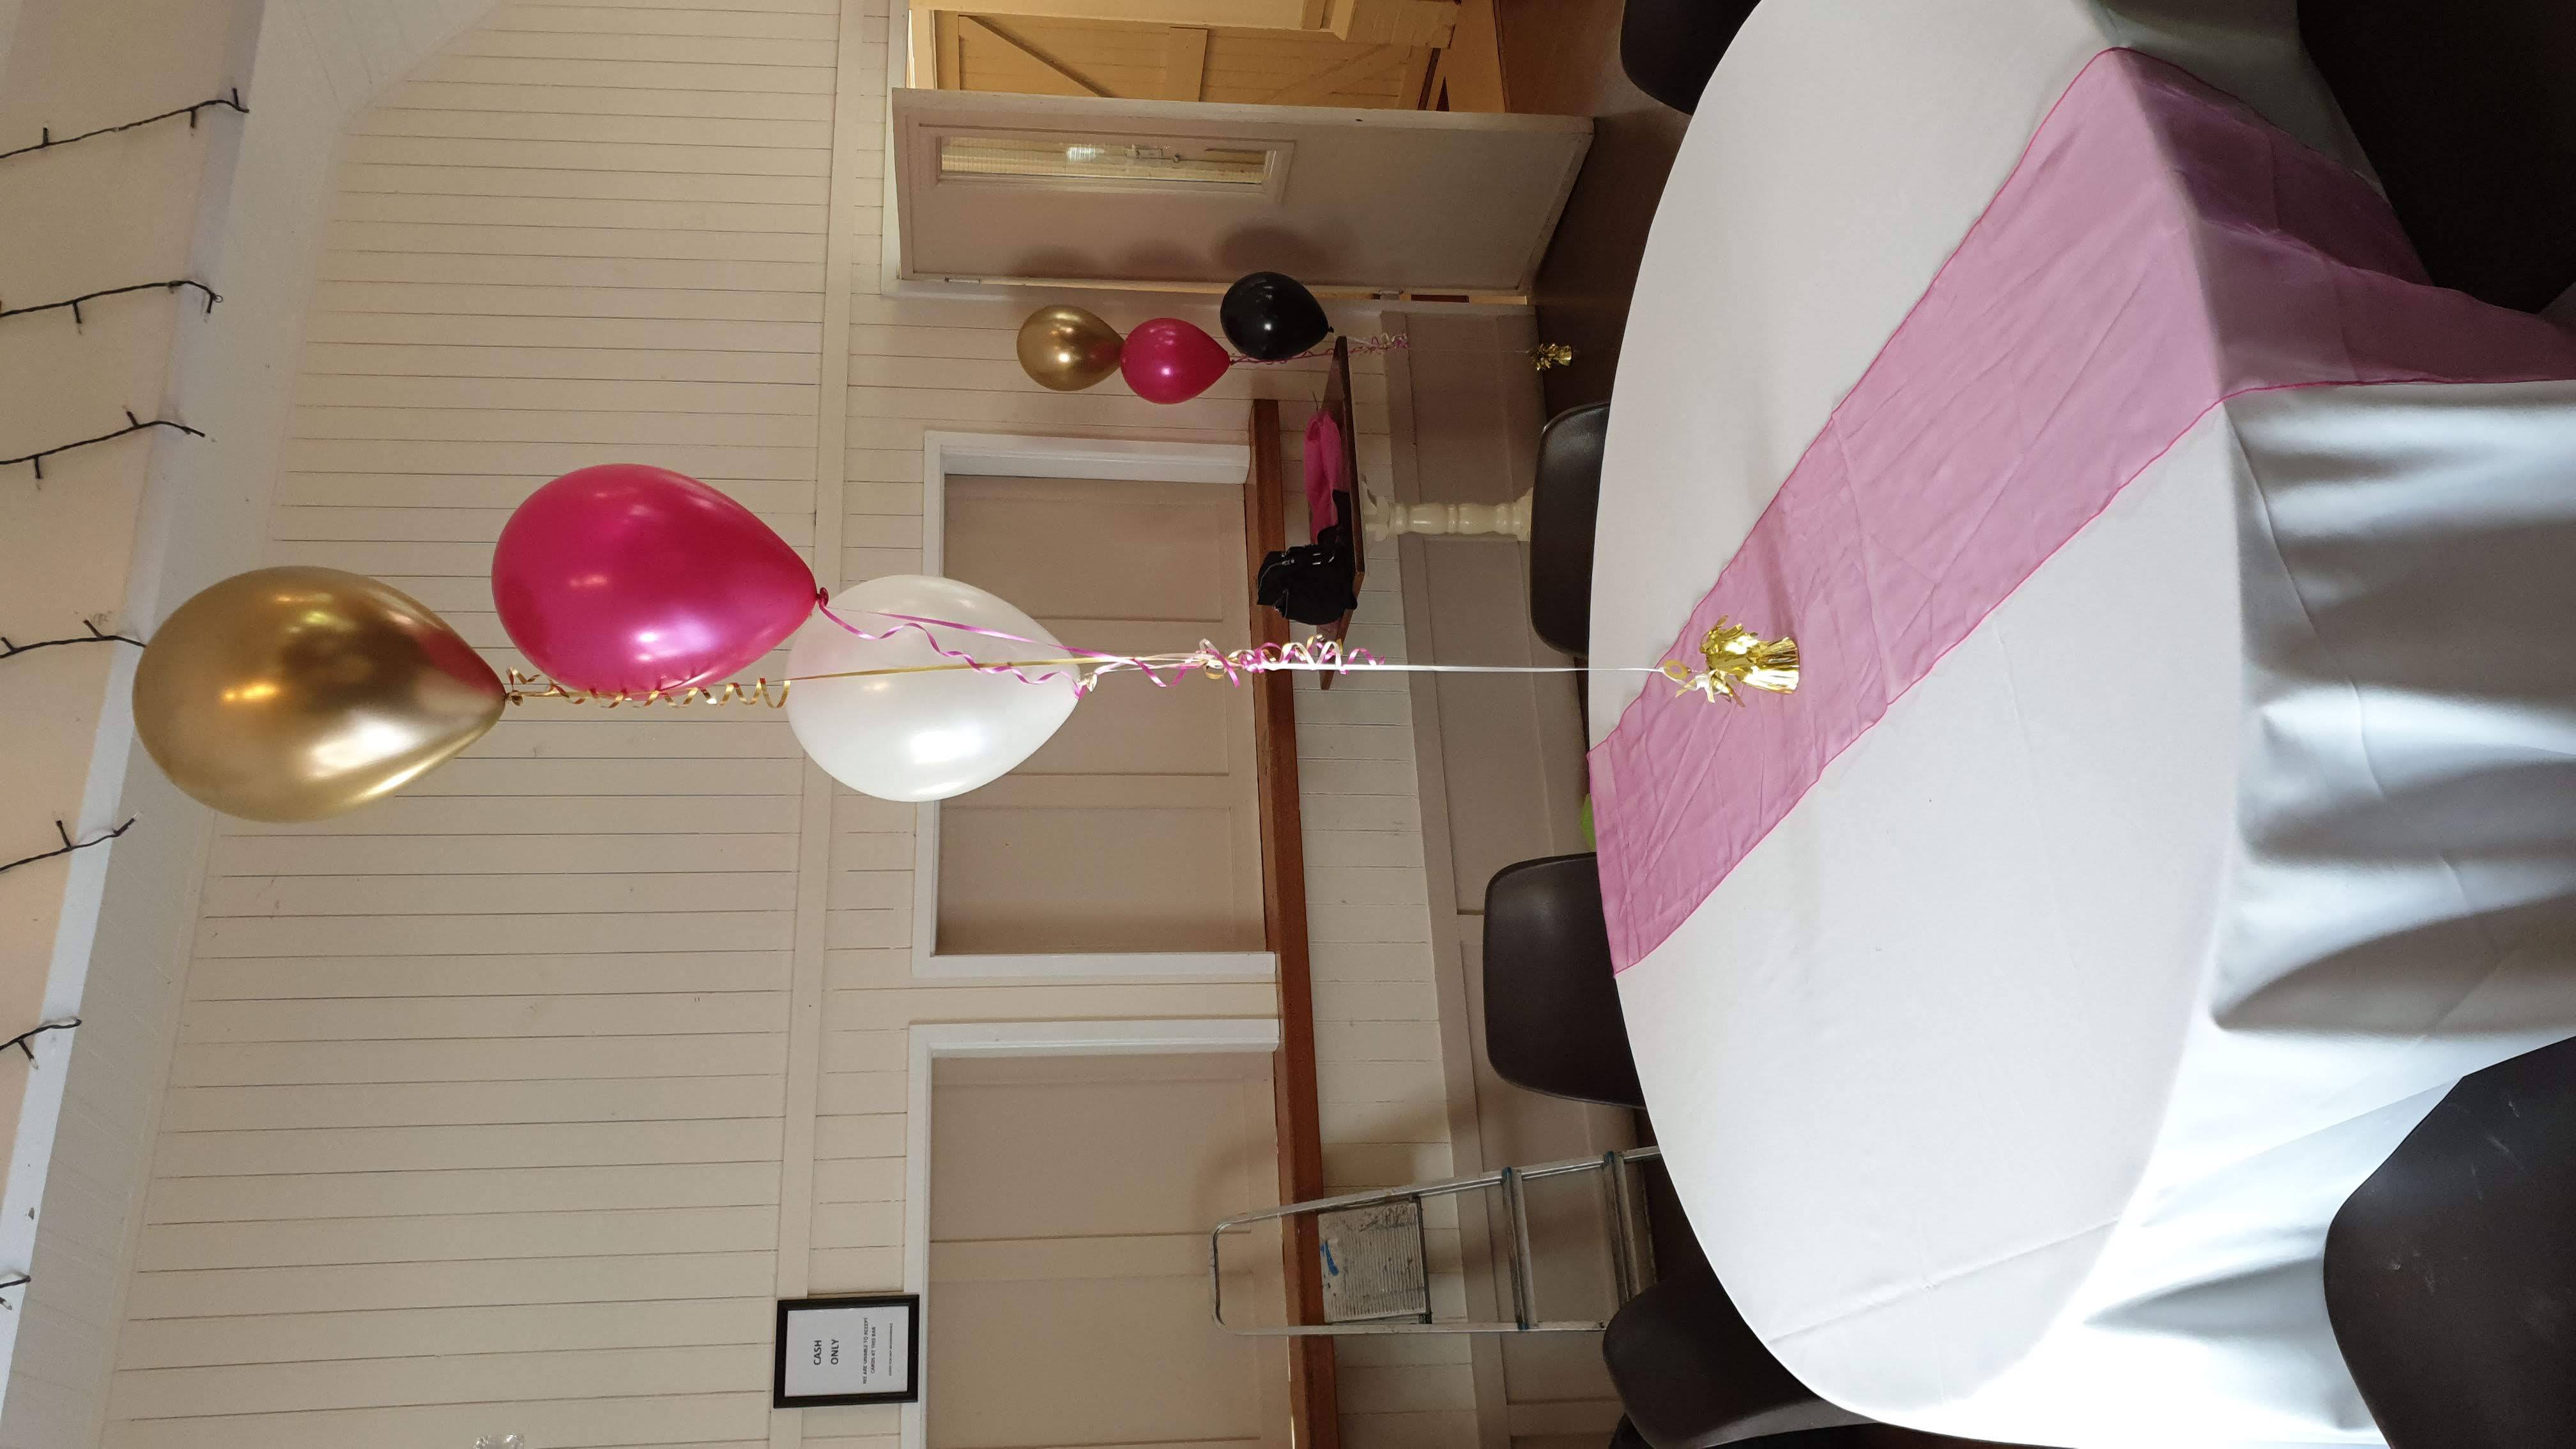 Table_Centrepieces_Balloons